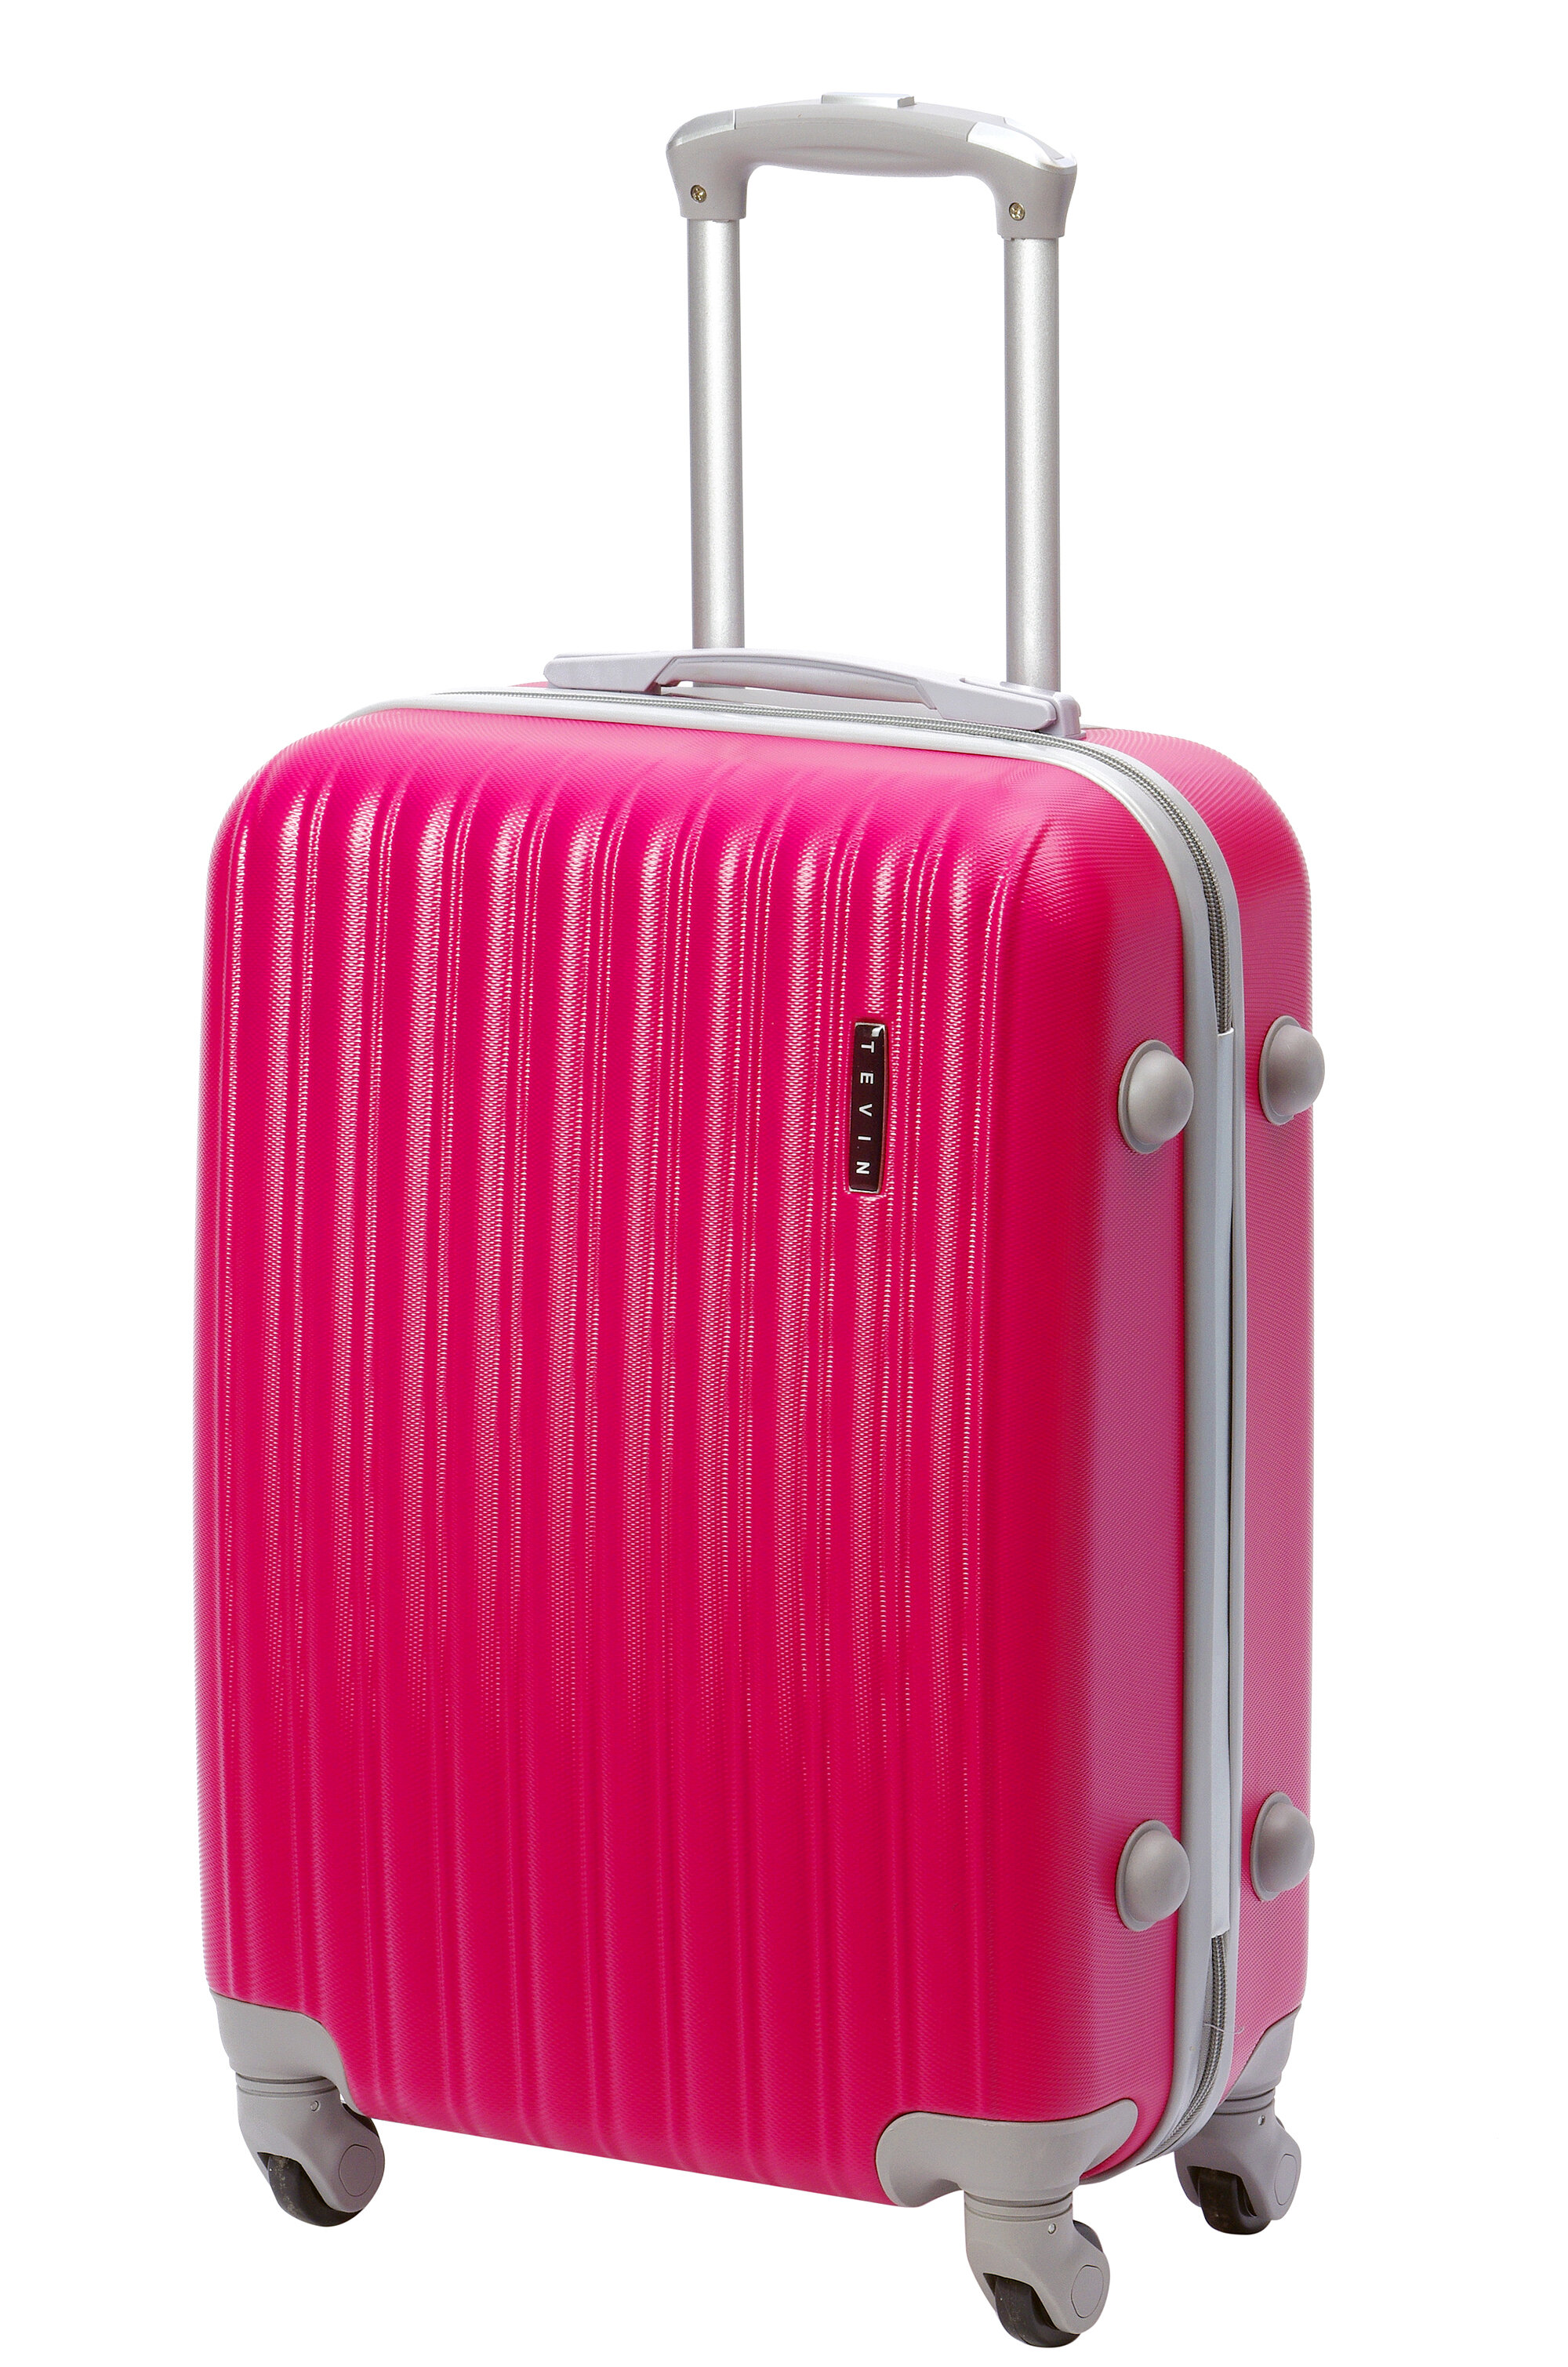 Чемодан на колесах дорожный большой семейный багаж для путешествий l TEVIN размер Л 73 см 105 л легкий 3.8 кг прочный abs (абс) пластик Розовый яркий